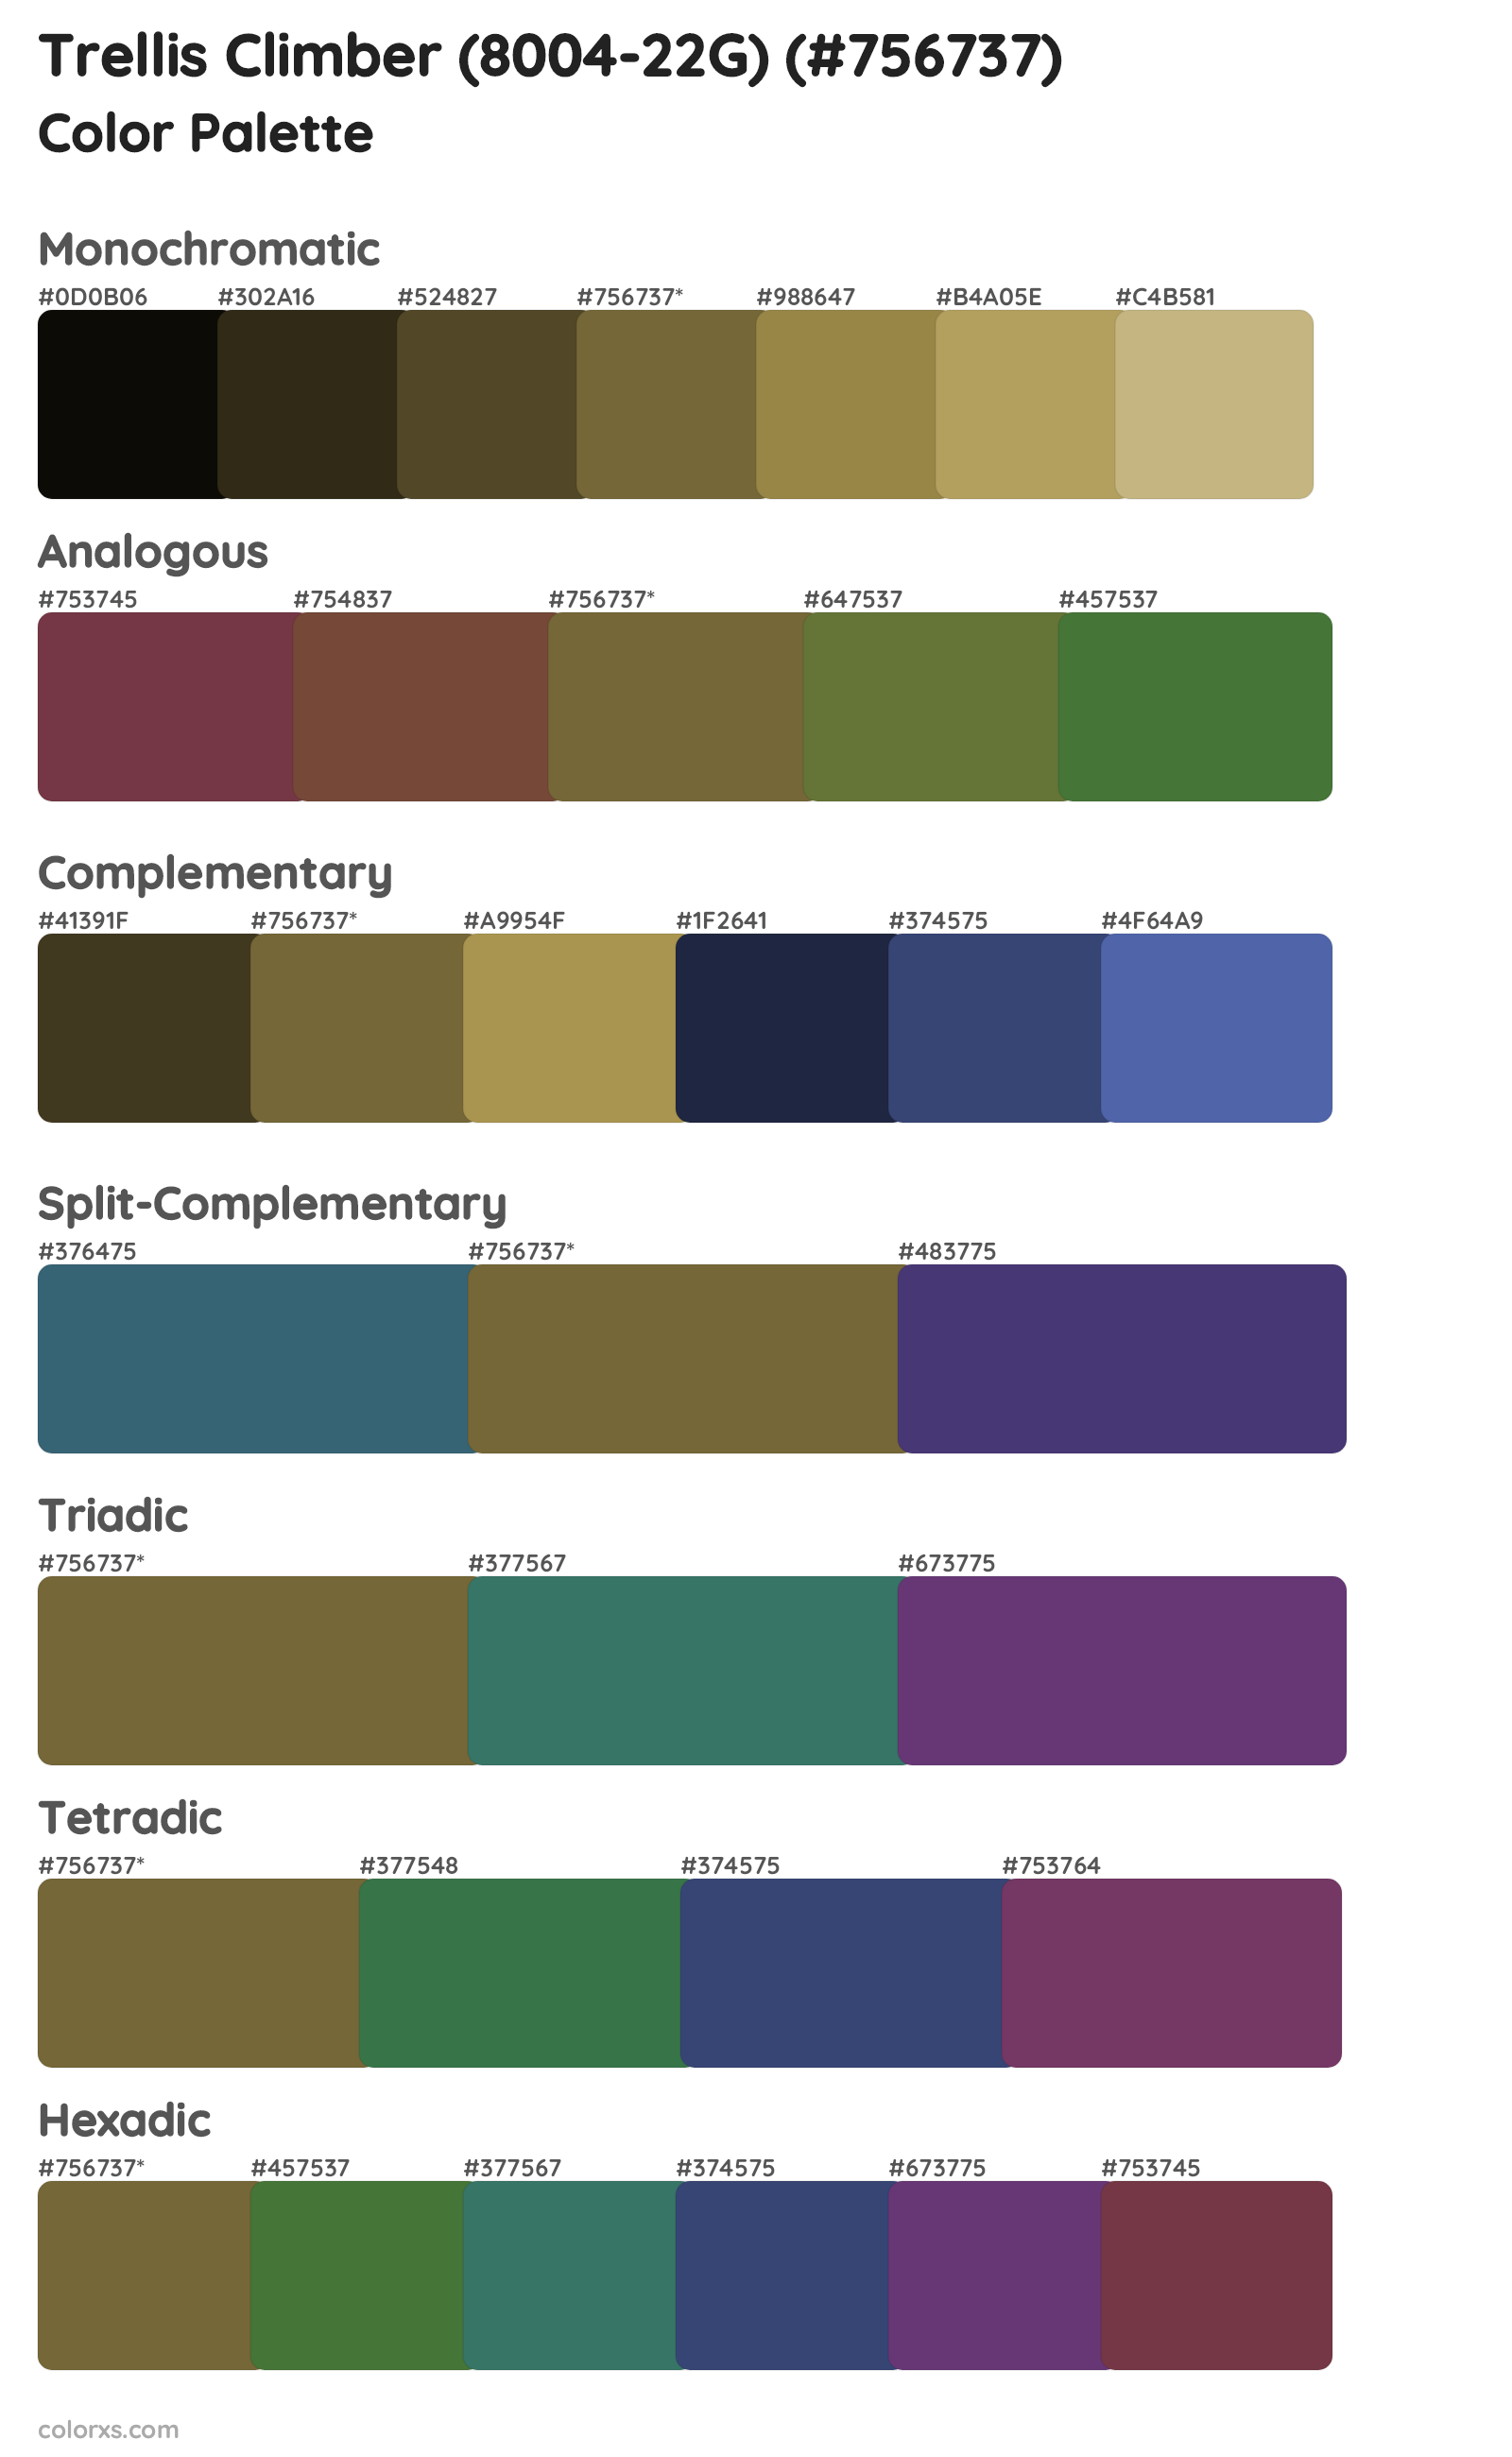 Trellis Climber (8004-22G) Color Scheme Palettes